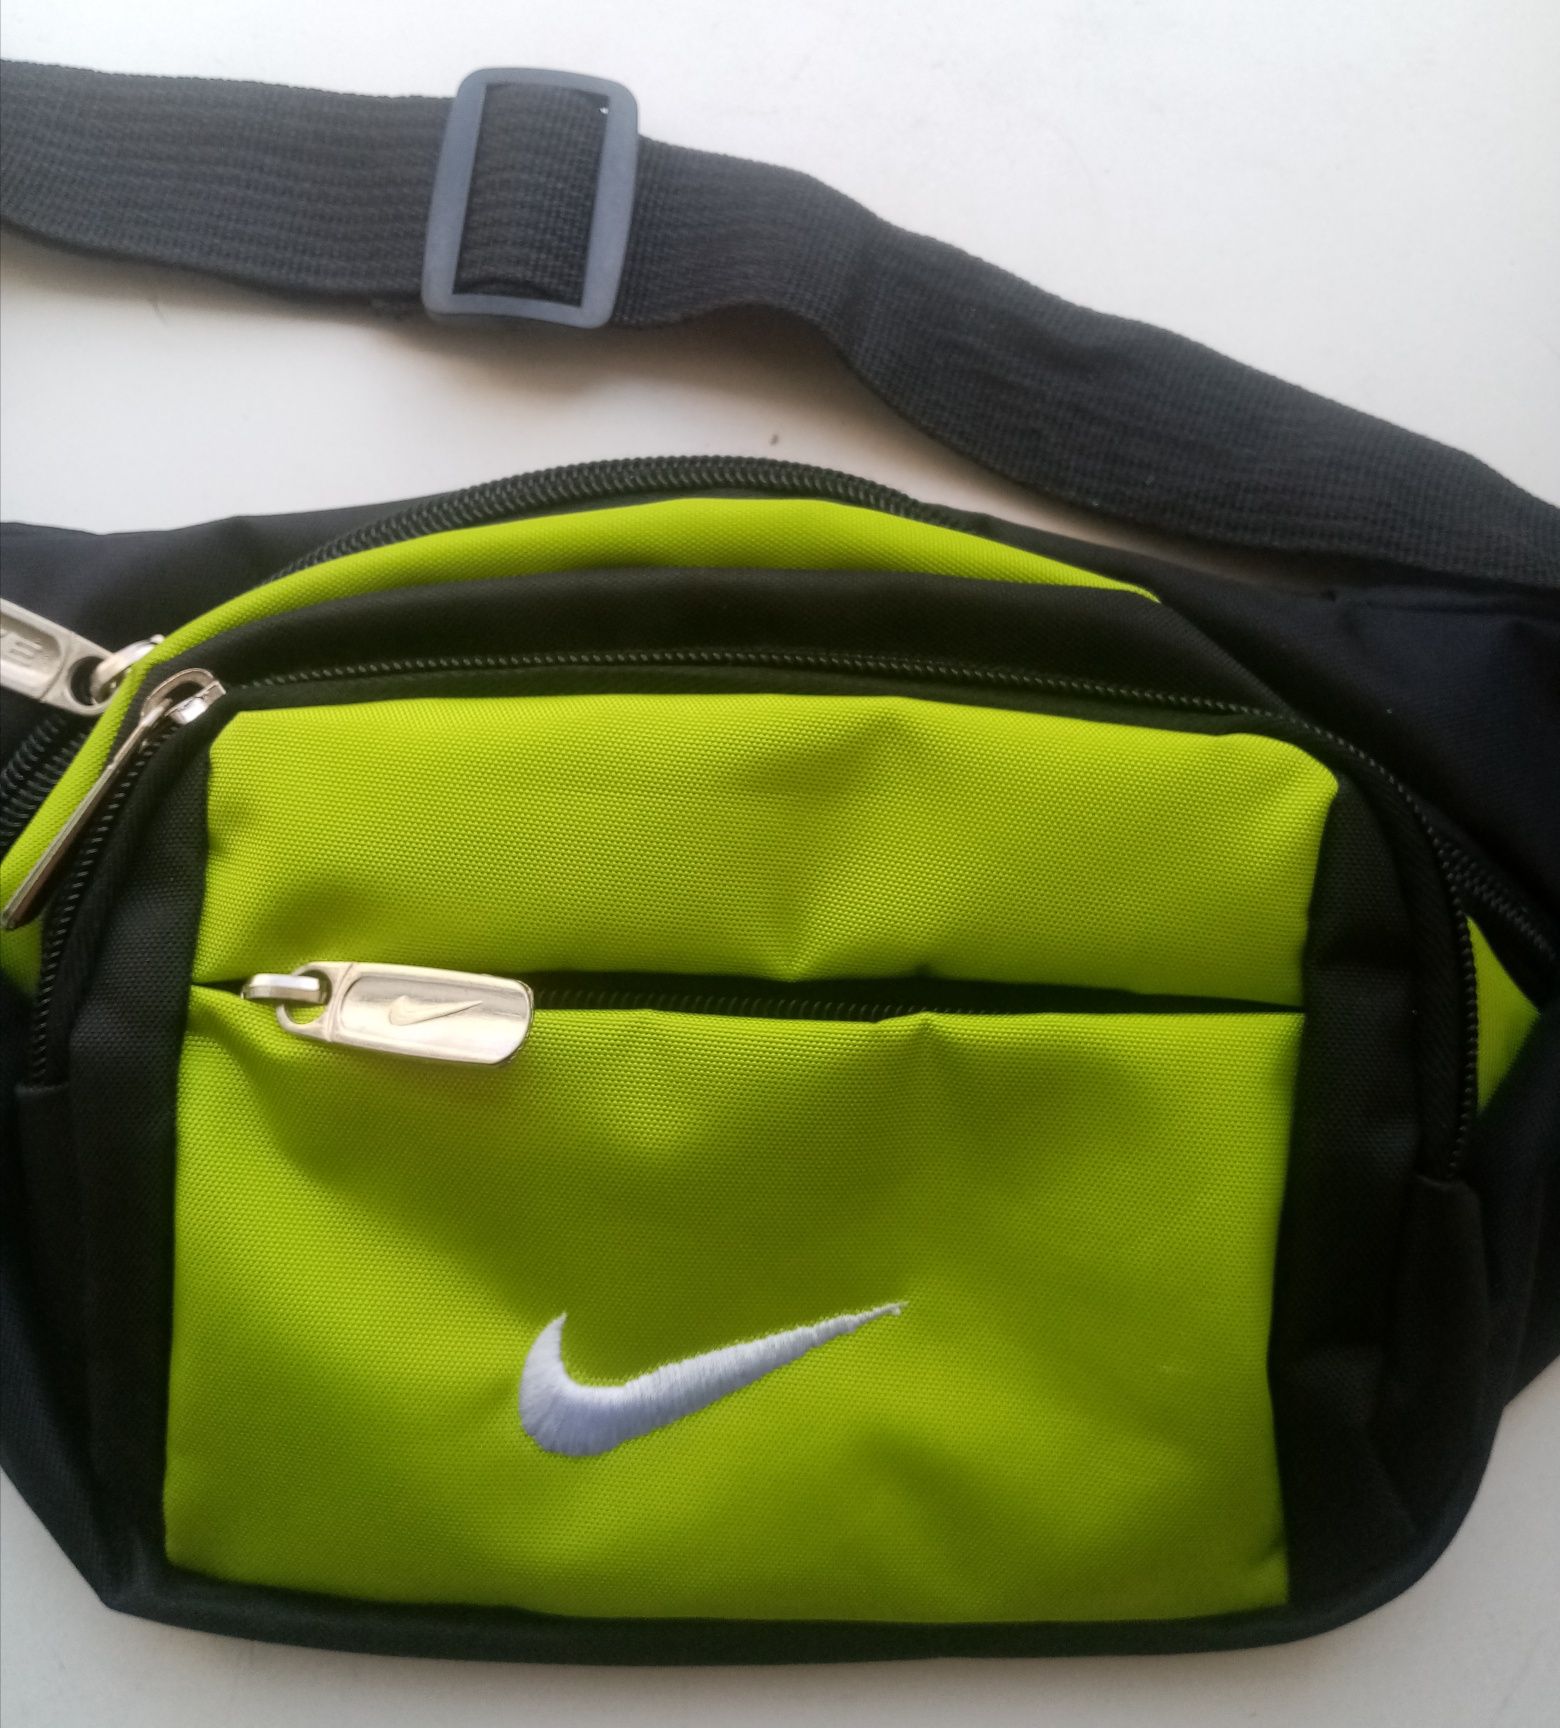 Винтажная сумка на пояс бананка Nike.
Оригинал.